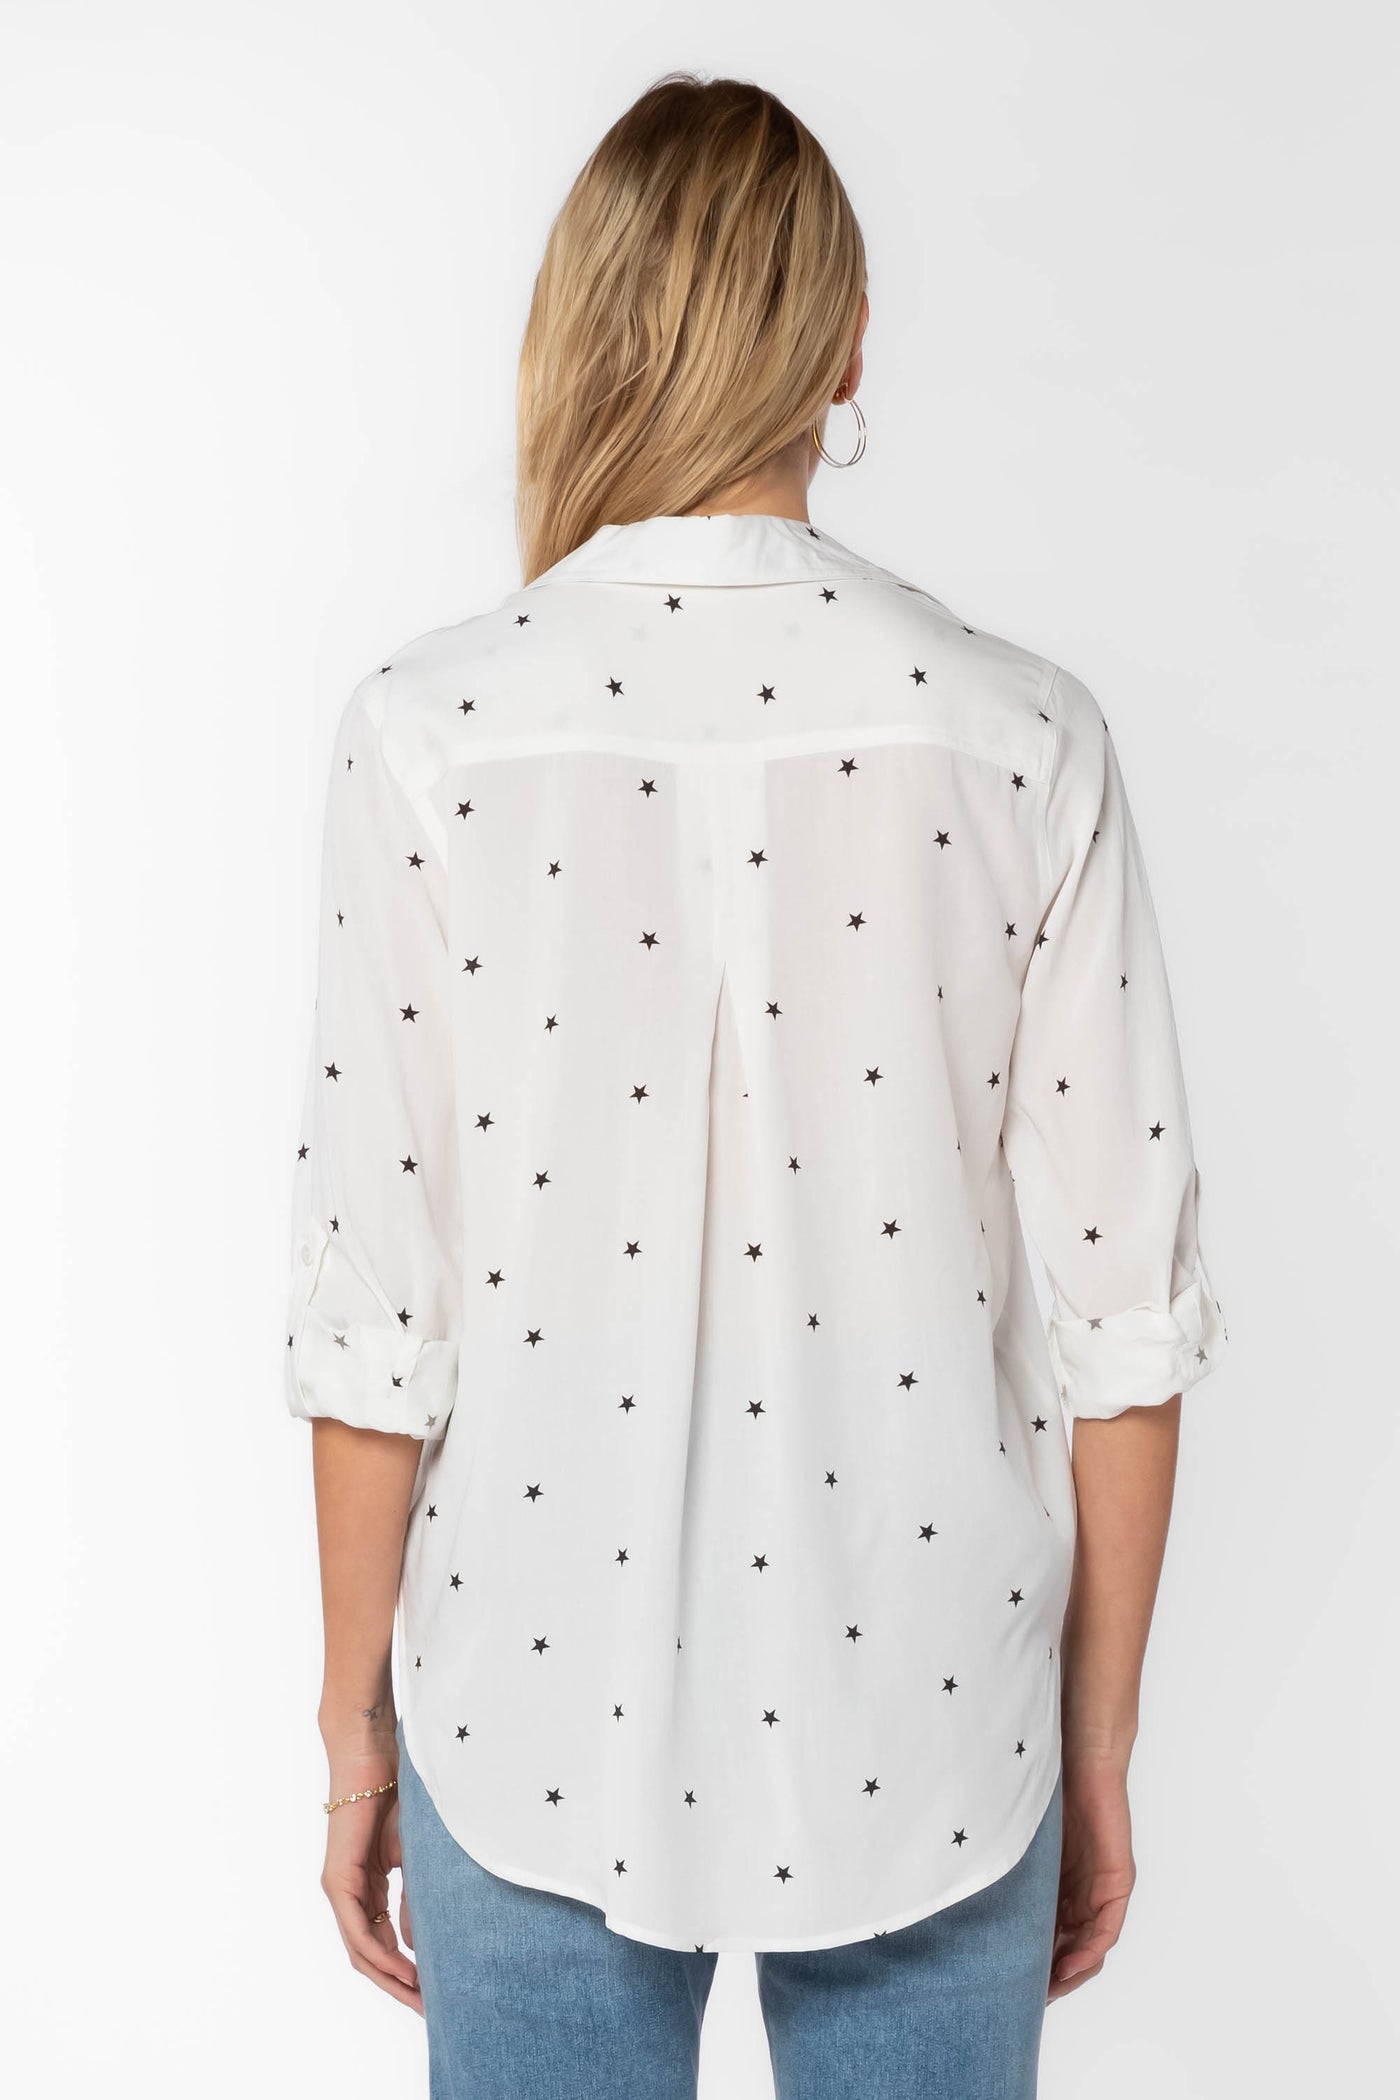 Elisa Stars Shirt - Tops - Velvet Heart Clothing